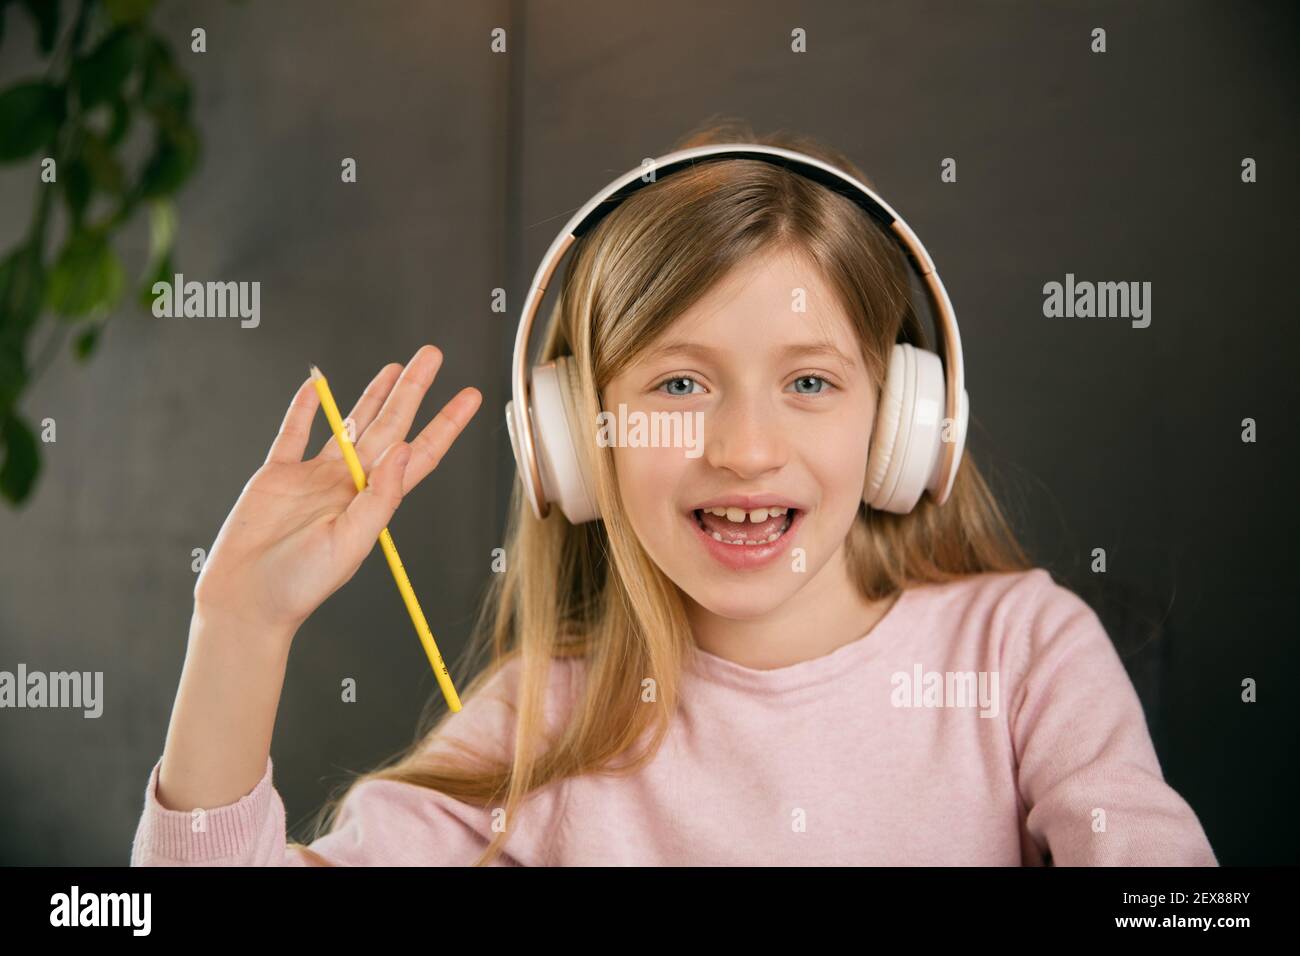 Petite fille portant des écouteurs pendant le cours d'éducation en ligne, leçon, vue de l'écran. Utilisation d'un casque. Concept d'utilisation facile et confortable, éducation, en ligne, enfance, des technologies modernes pour la remotion. Banque D'Images